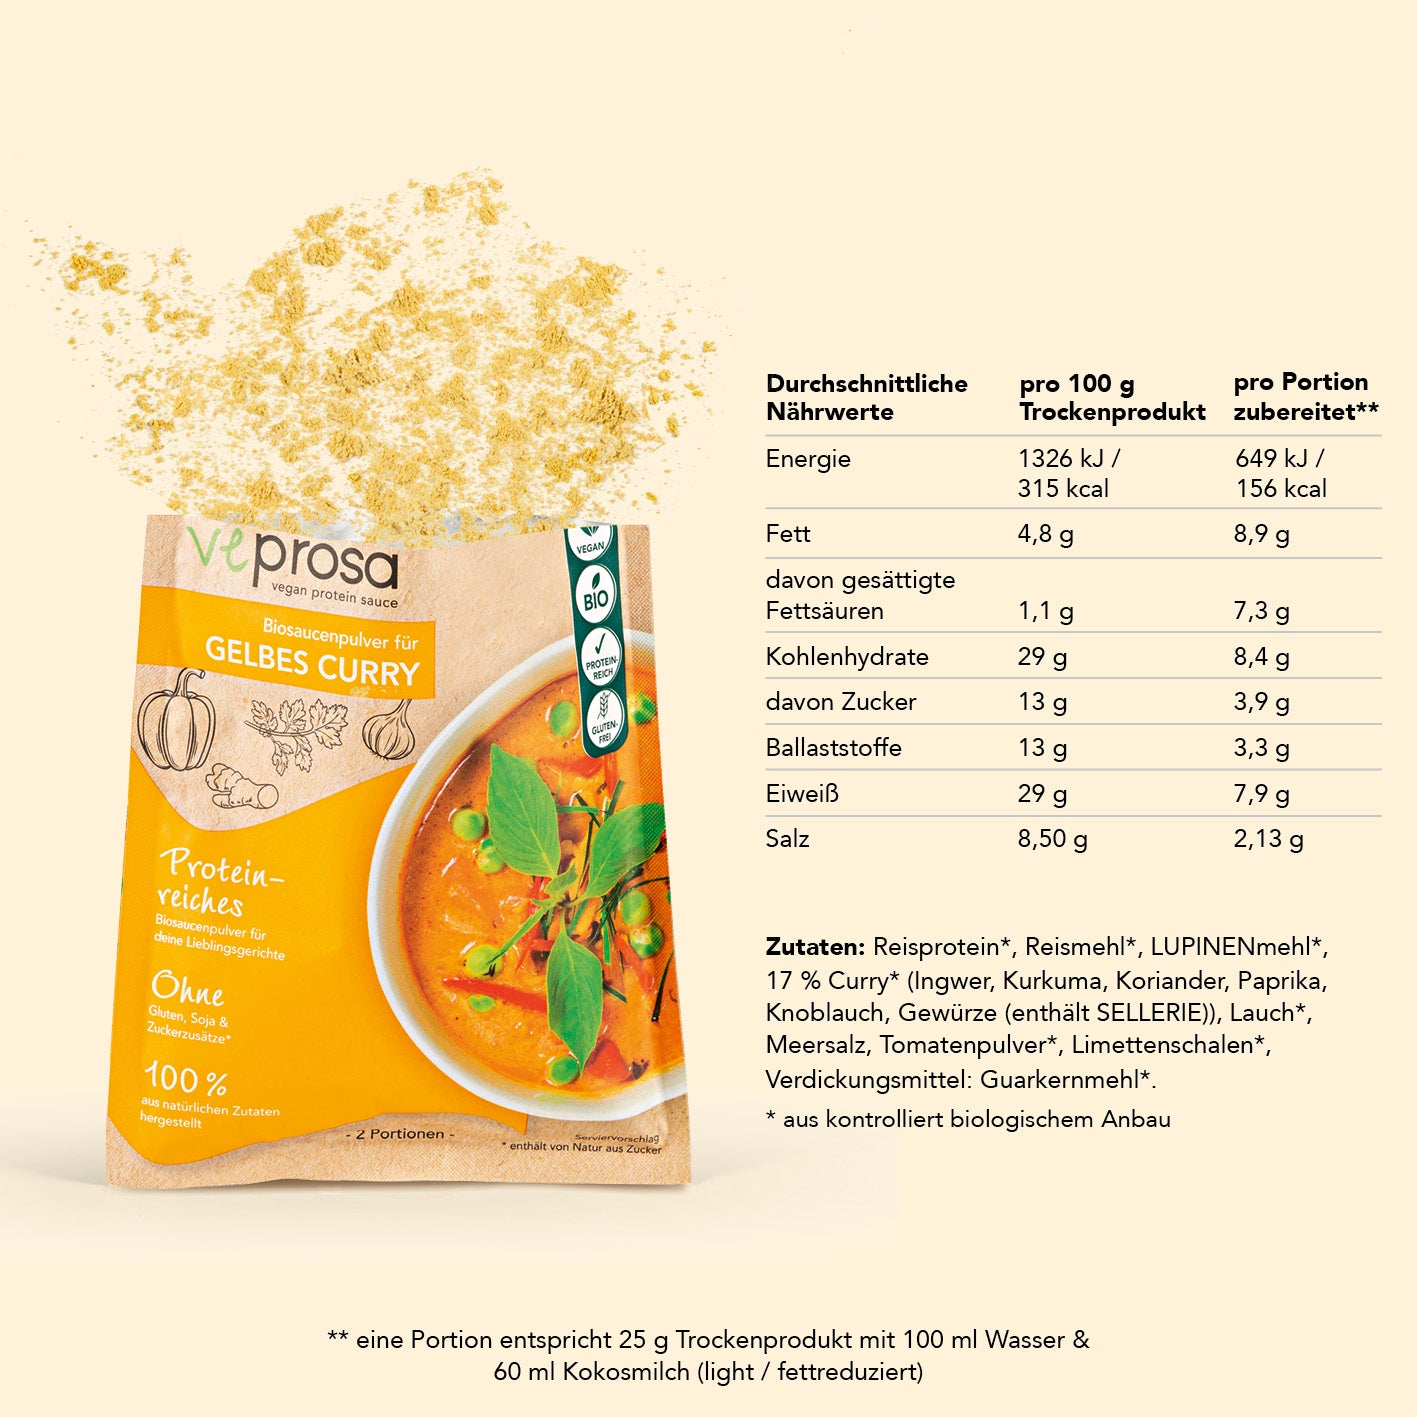 vegan protein sauce Biosaucenpulver für gelbes Curry (50 g)